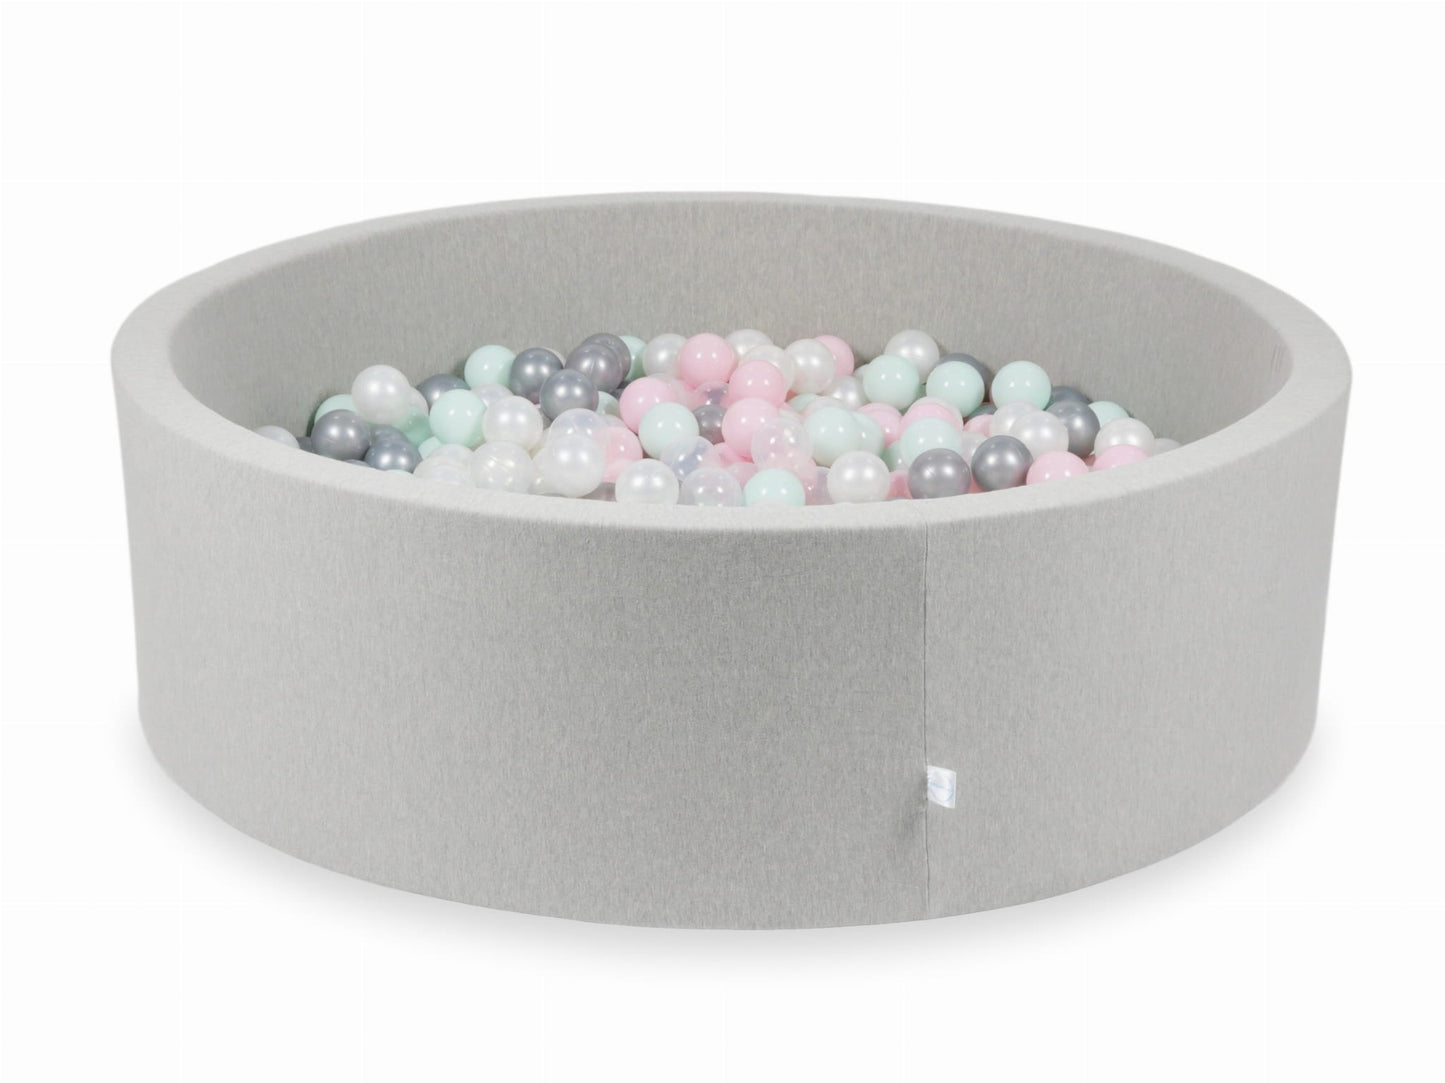 Piscine à Balles 130x40 gris clair avec balles 700 pcs (transparent, perle, argent, rose clair, menthe clair)